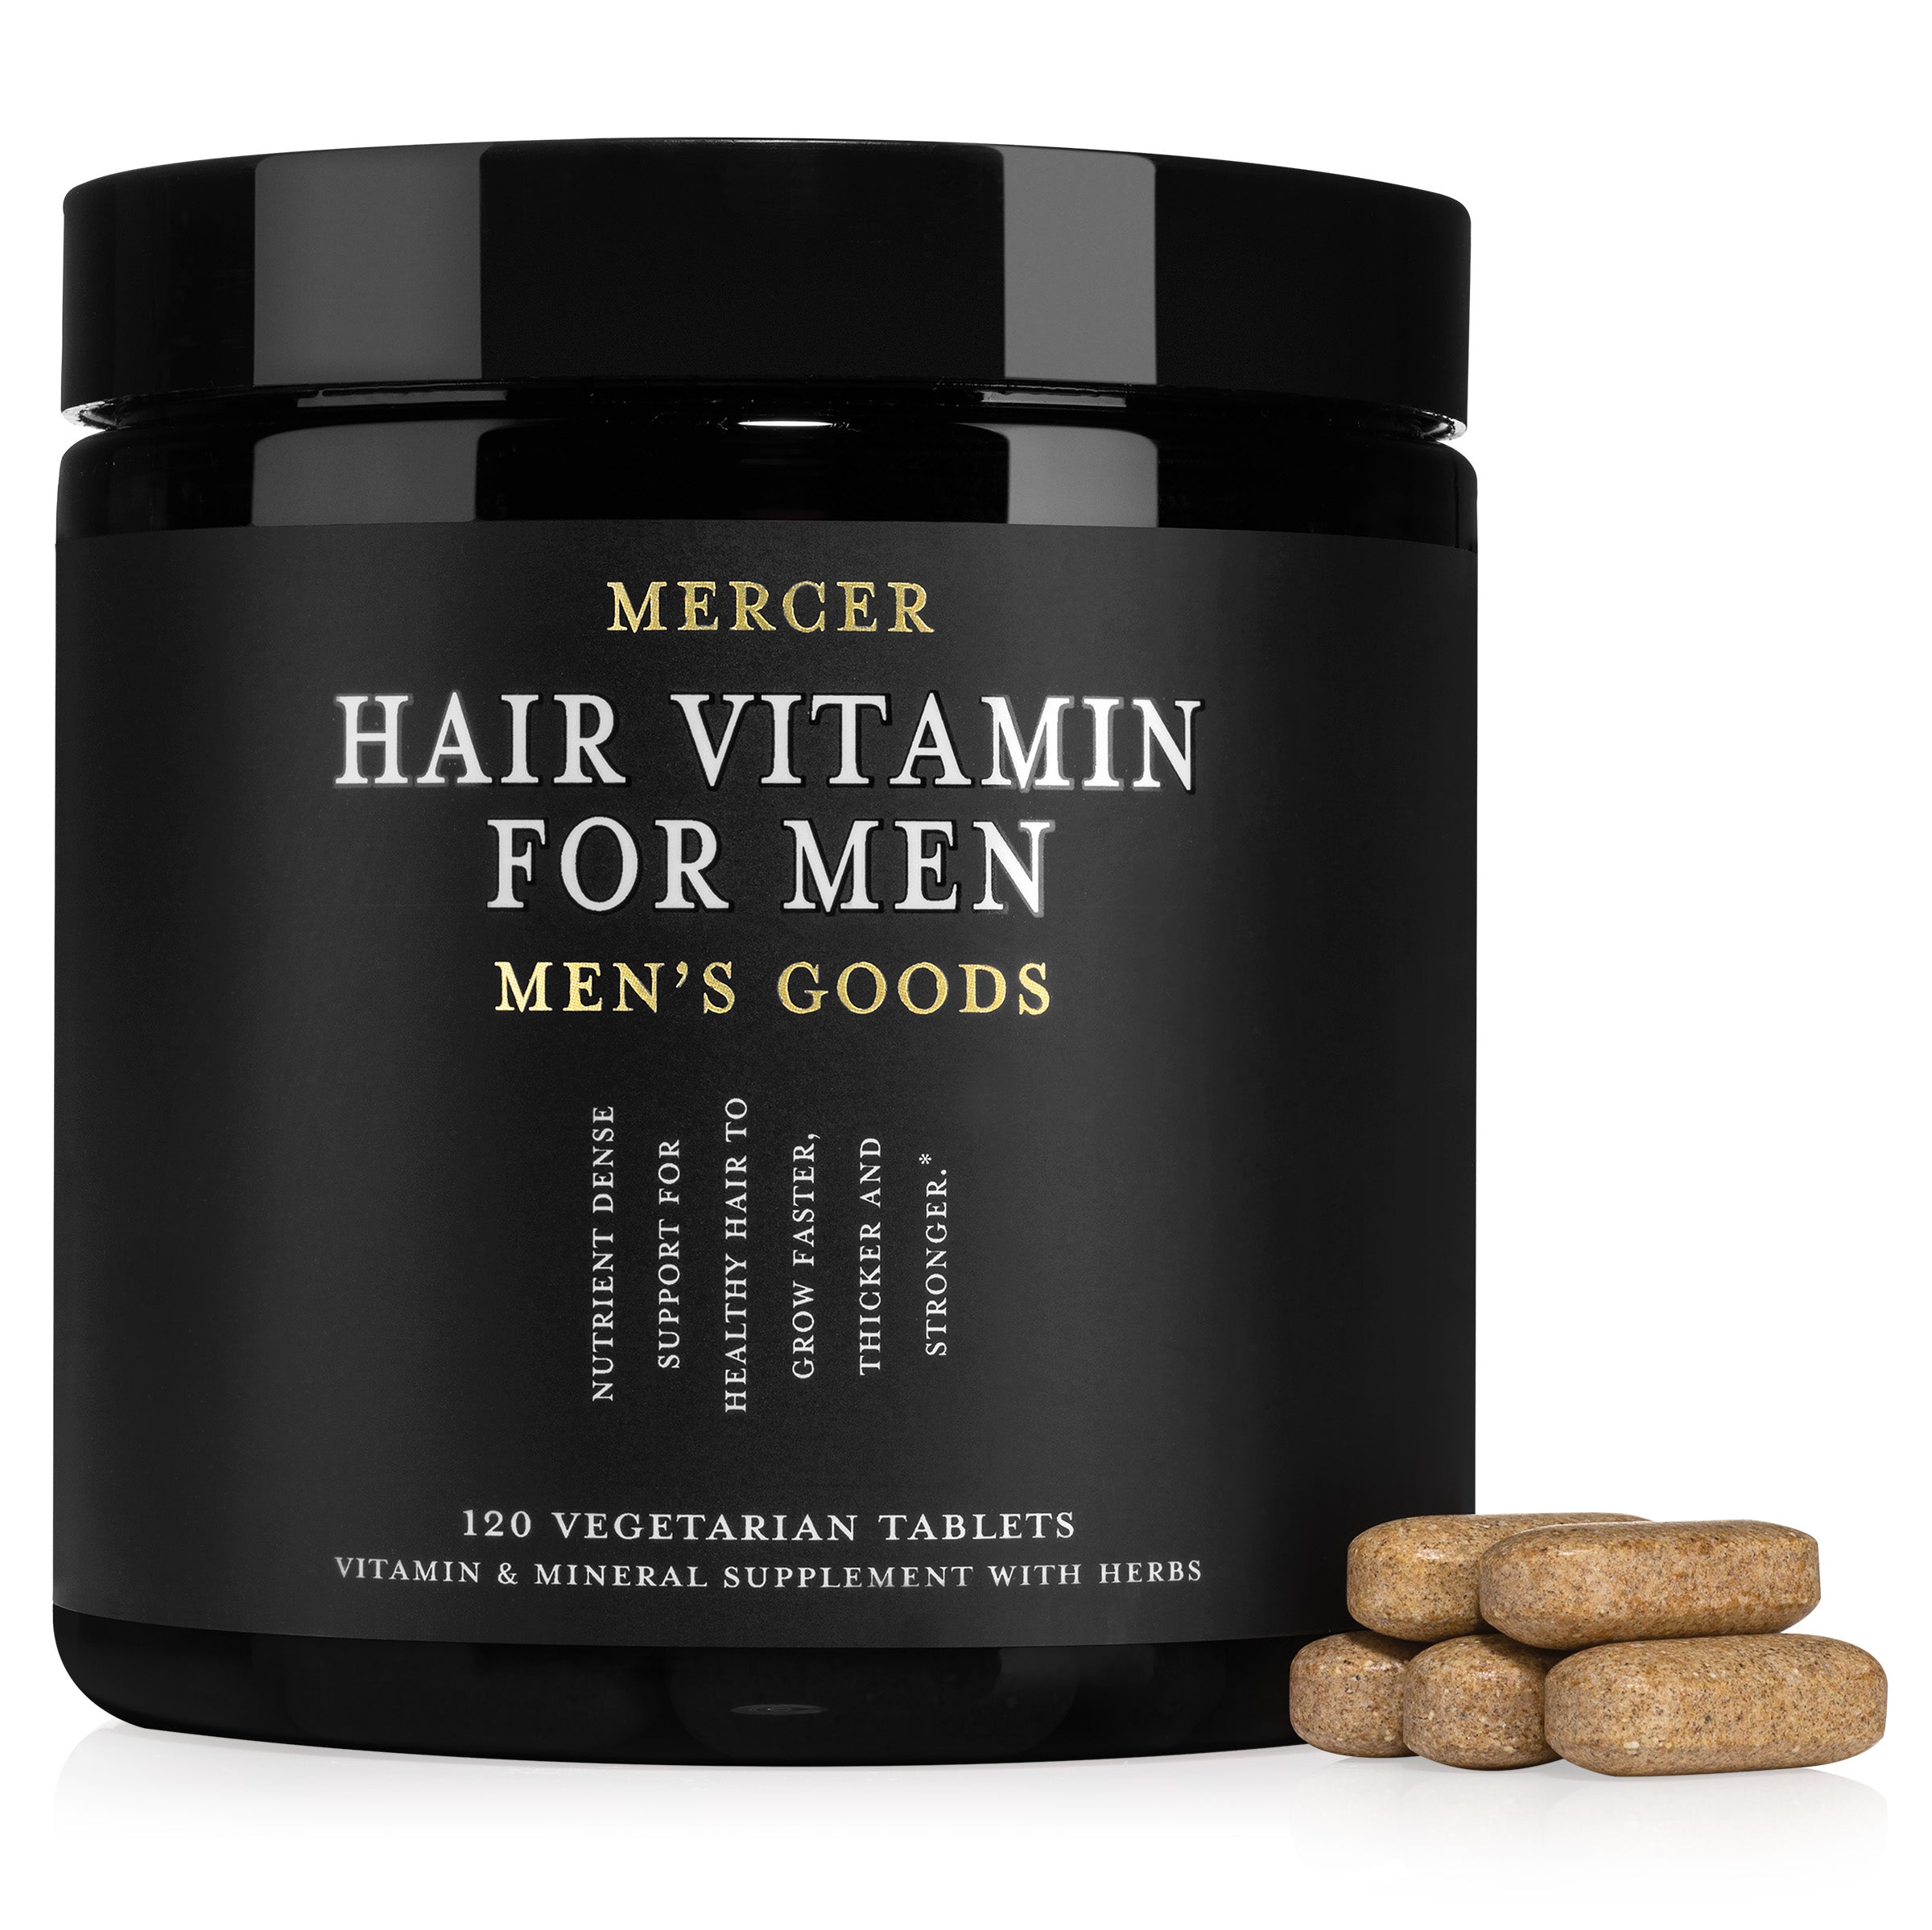 Hair Vitamin for Men – Mercer Men's Goods